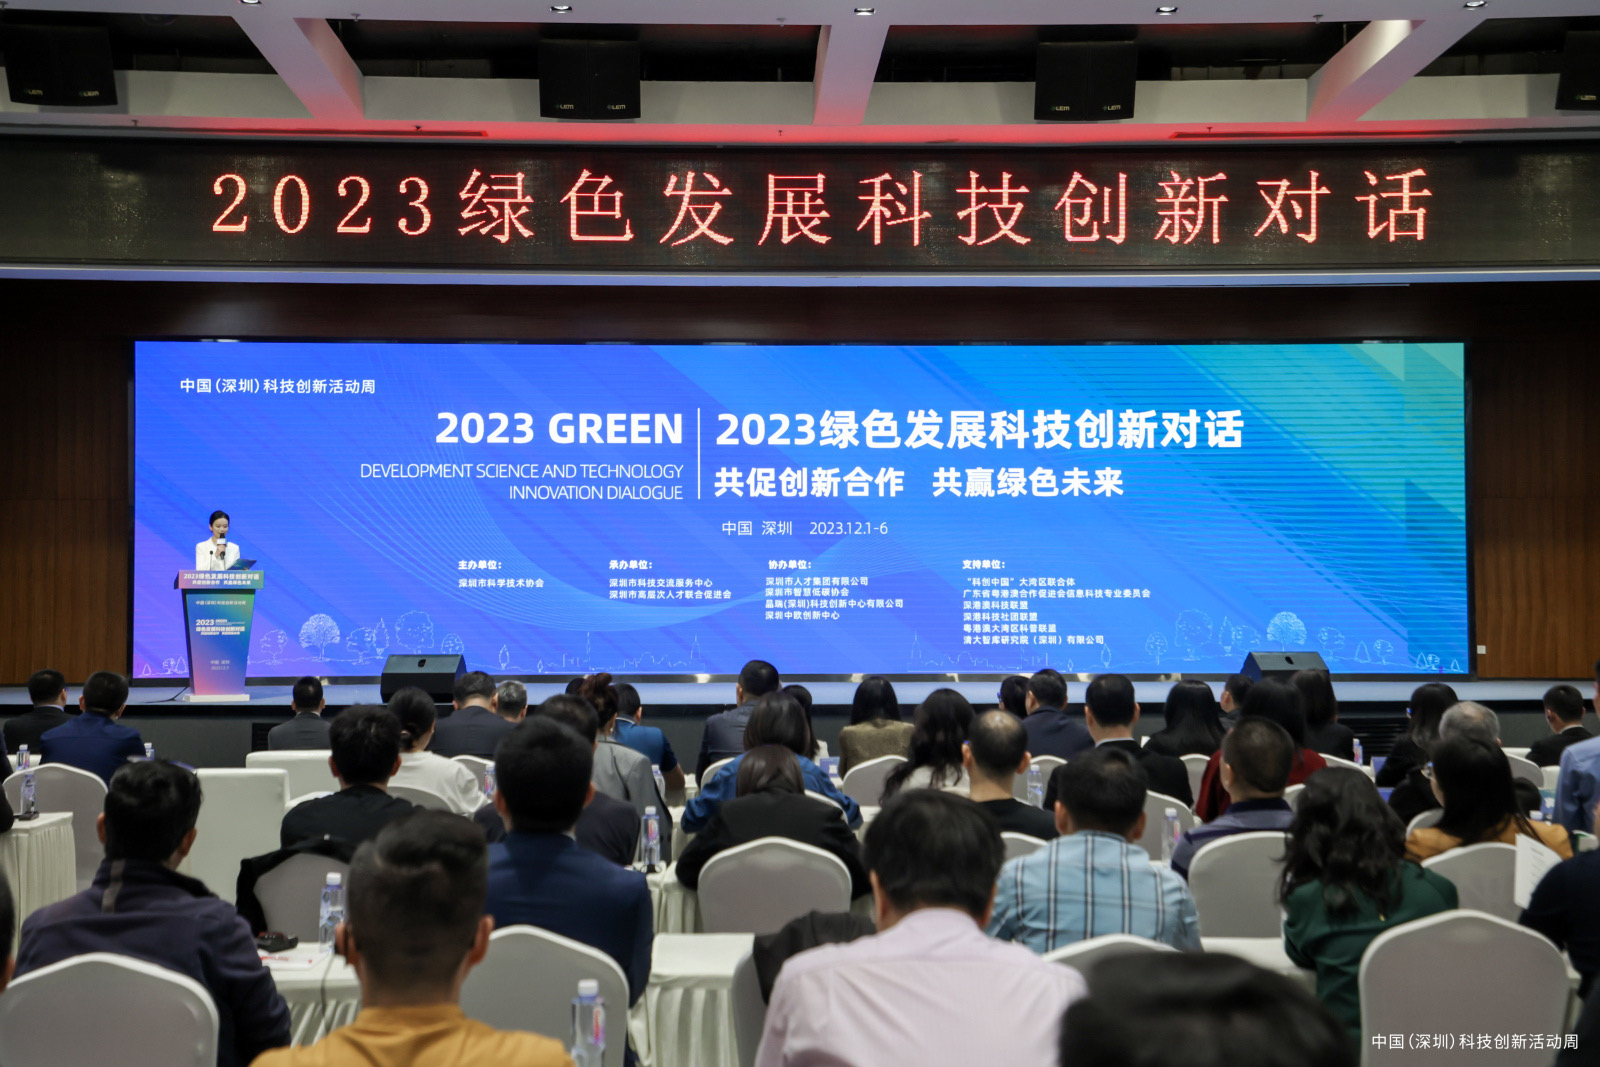 “共促创新合作 共赢绿色未来” 2023绿色发展科技创新对话活动举办